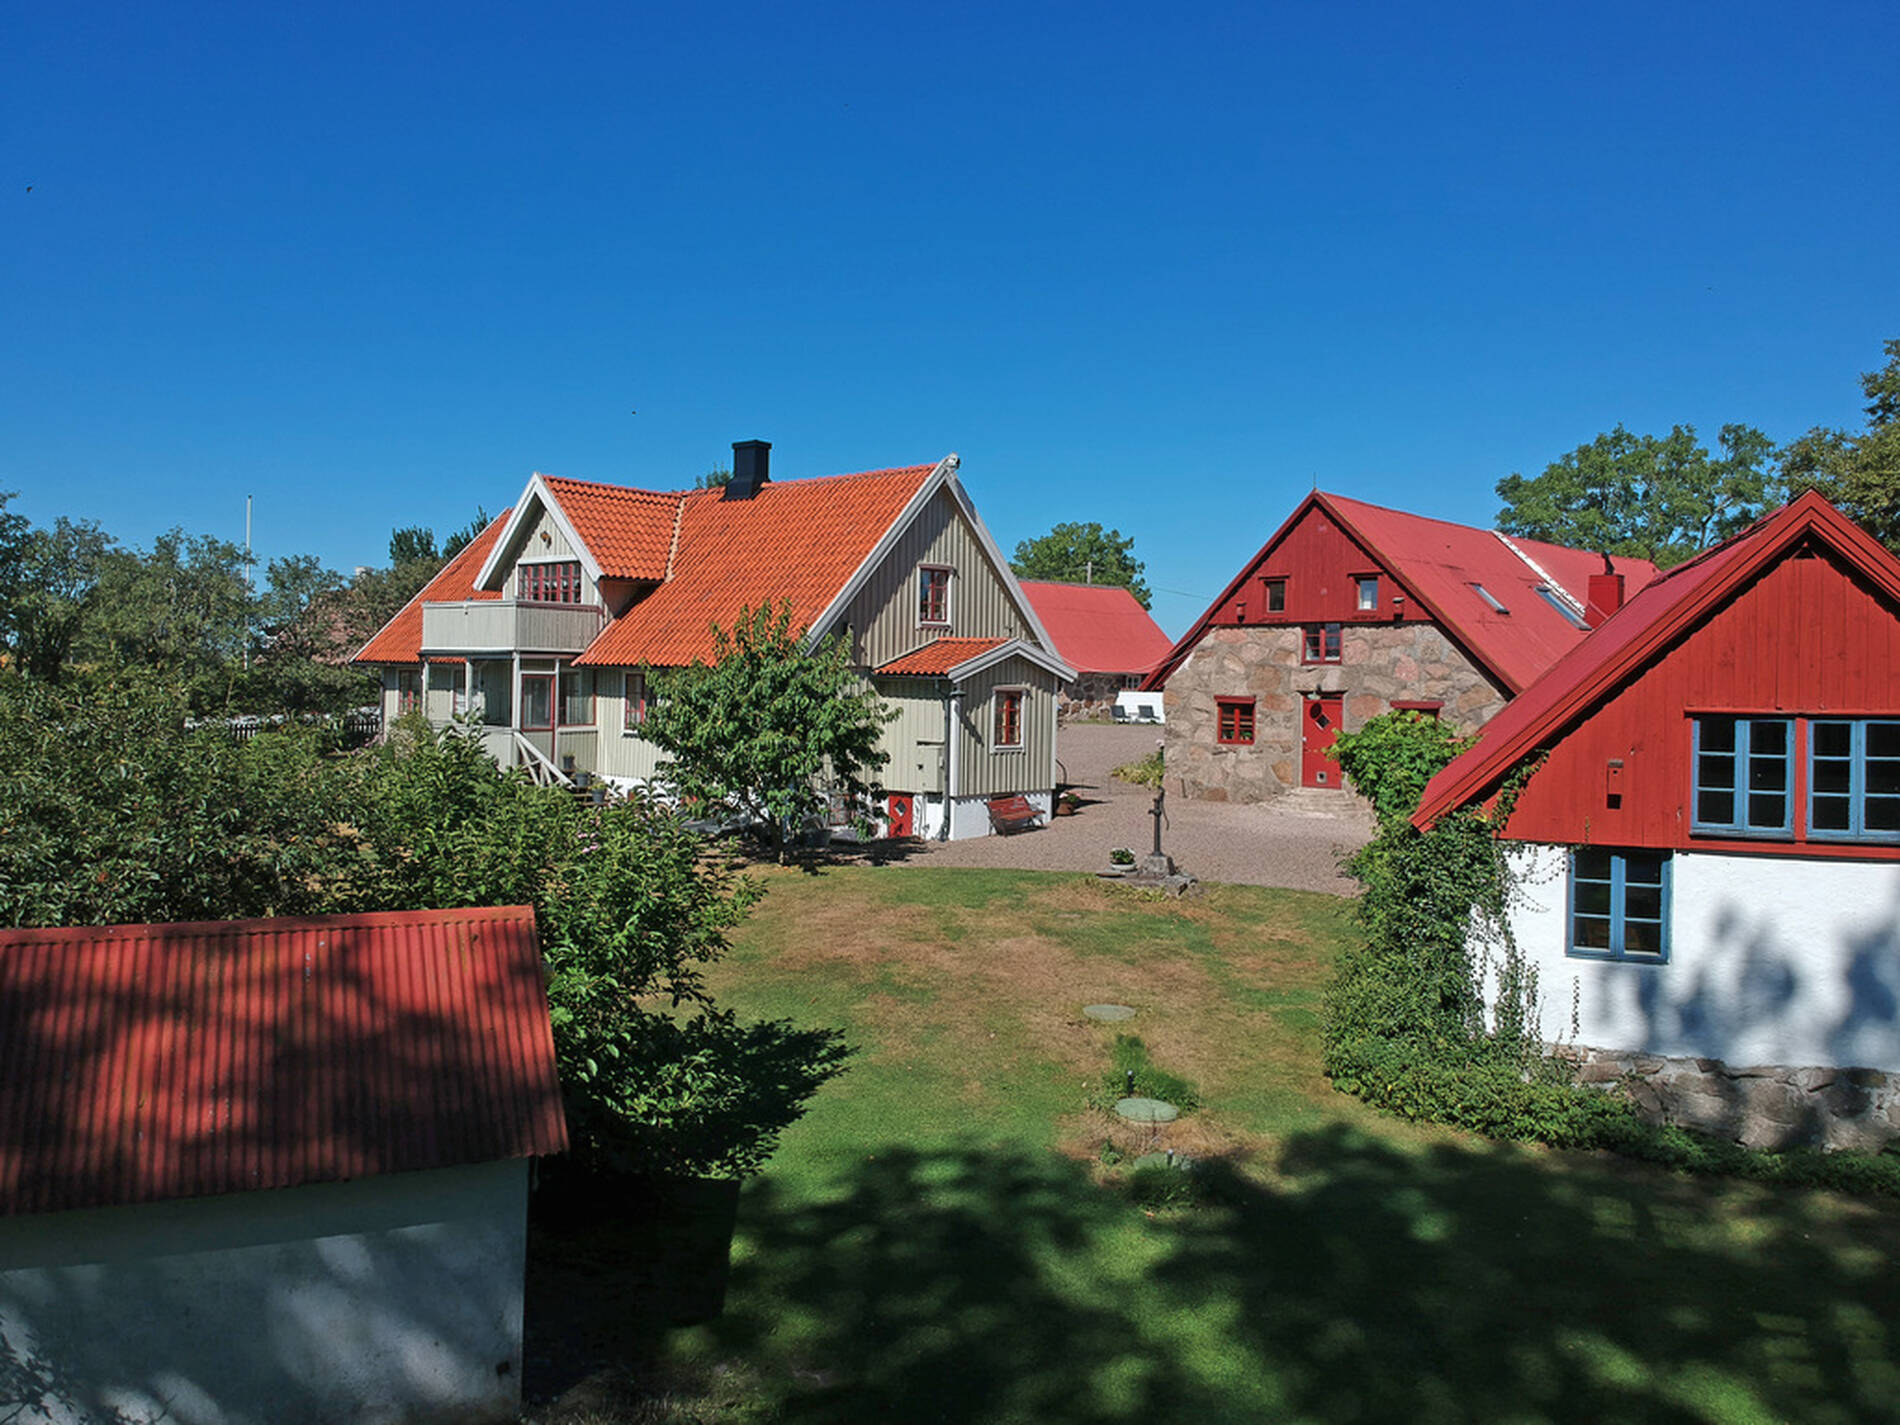 Exklusiva drömboenden från hela Sverige, du hittar exklusiva villor, exklusiva våningar och exklusiva gårdar i det digitala Galleriet. I mäklarguiden hittar du utvalda fastighetsmäklare. Om du söker en exklusiv bostad eller mäklare så hittar du dem i vår guide.